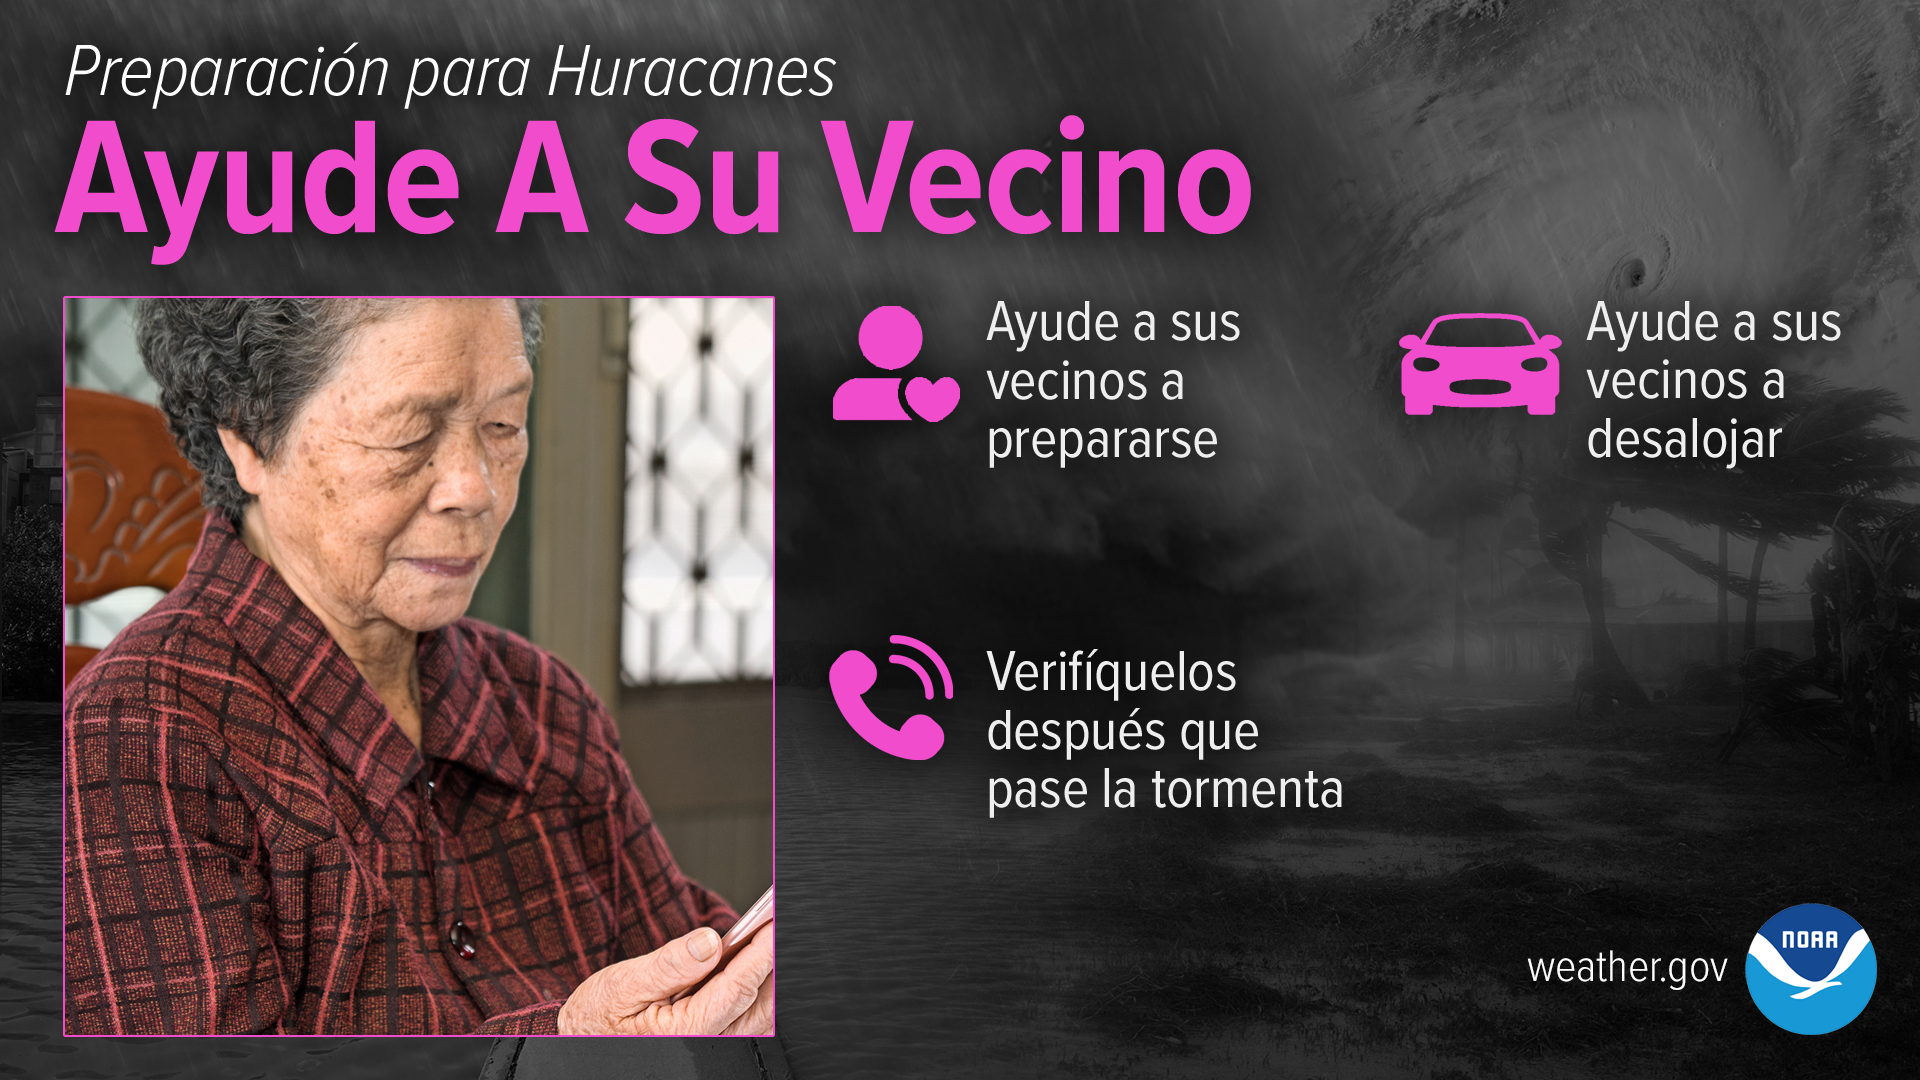 Preparación para Huracanes - Ayude A Su Vecino: Ayude a sus vecinos a prepararse. Ayude a sus vecinos a desalojar. Verifíquelos después que pase la tormenta.